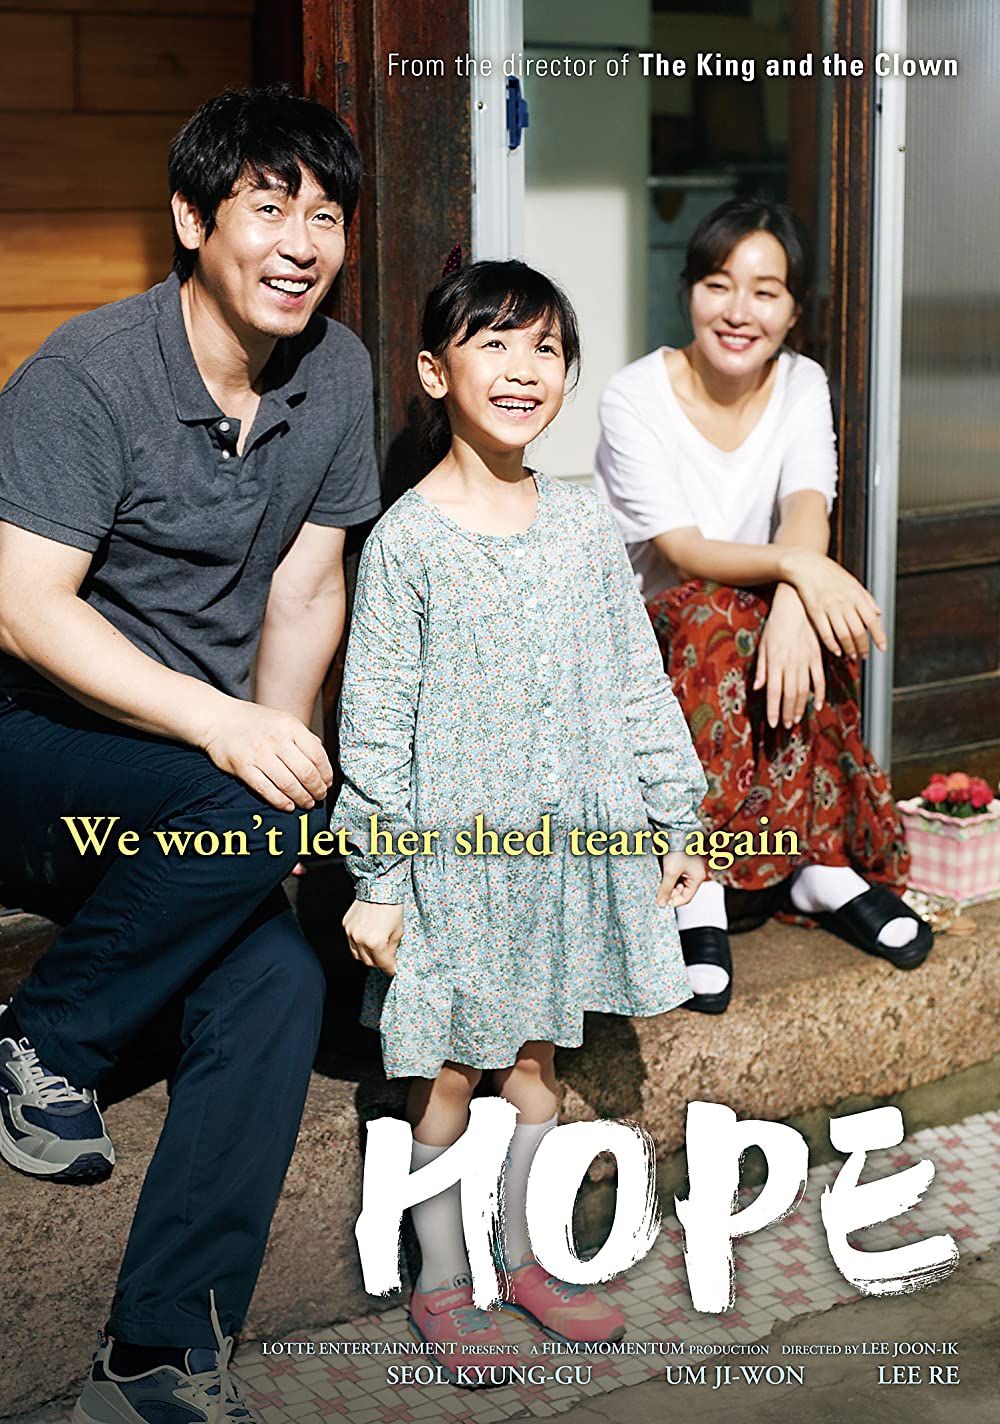 Film korea yang tidak boleh ditonton anak kecil